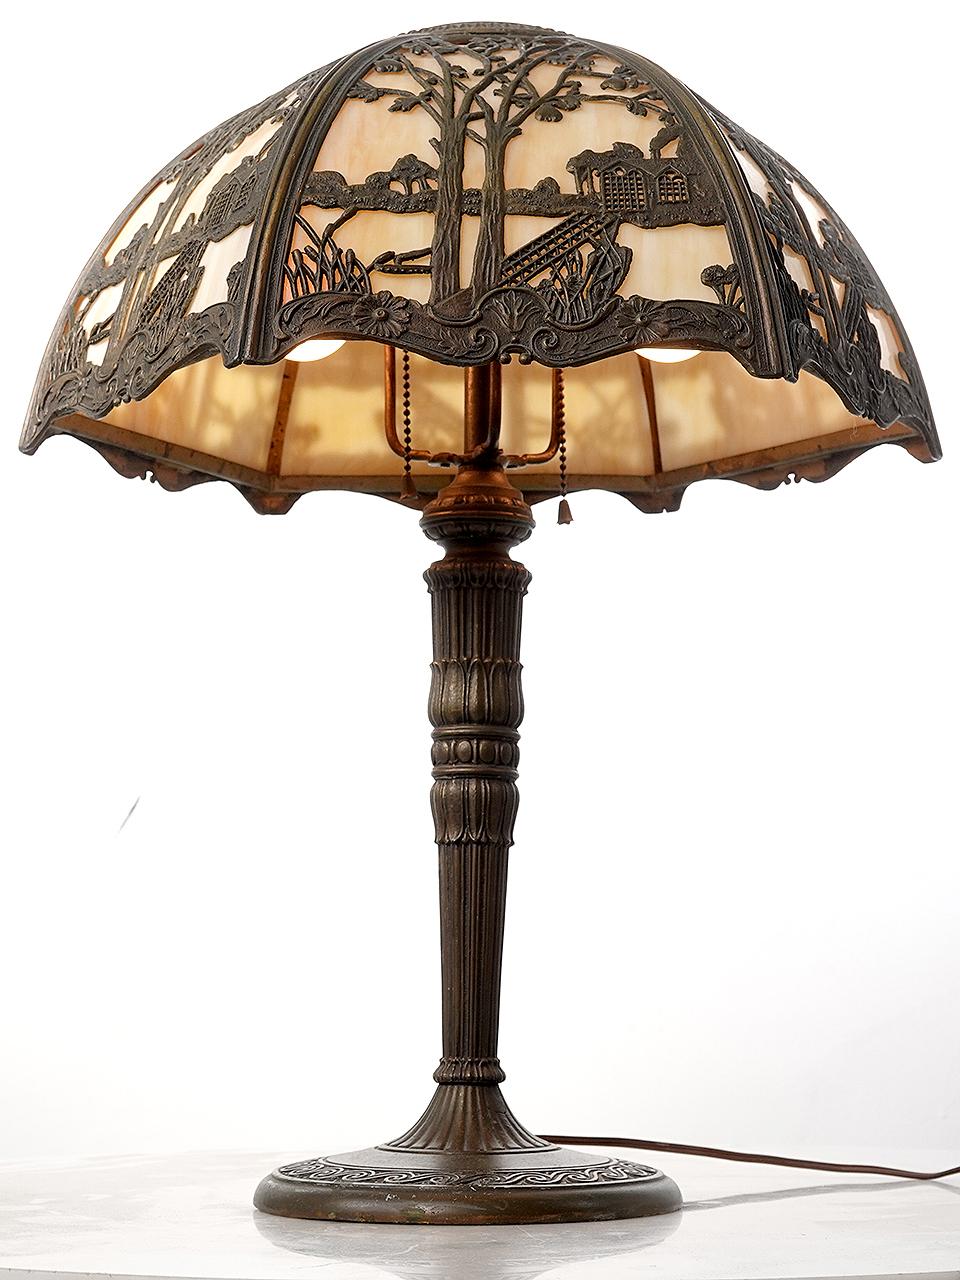 Dies ist eine schön gestaltete Arts and Crafts Tischlampe. Sie hat einen geschwungenen Schirm mit 6 aufwändig gegossenen, filigranen Paneelen mit Landschaftsmotiven. Jedes Paneel aus gebogenem Glas hat eine cremefarbene -  bernsteinfarbenem Glas und